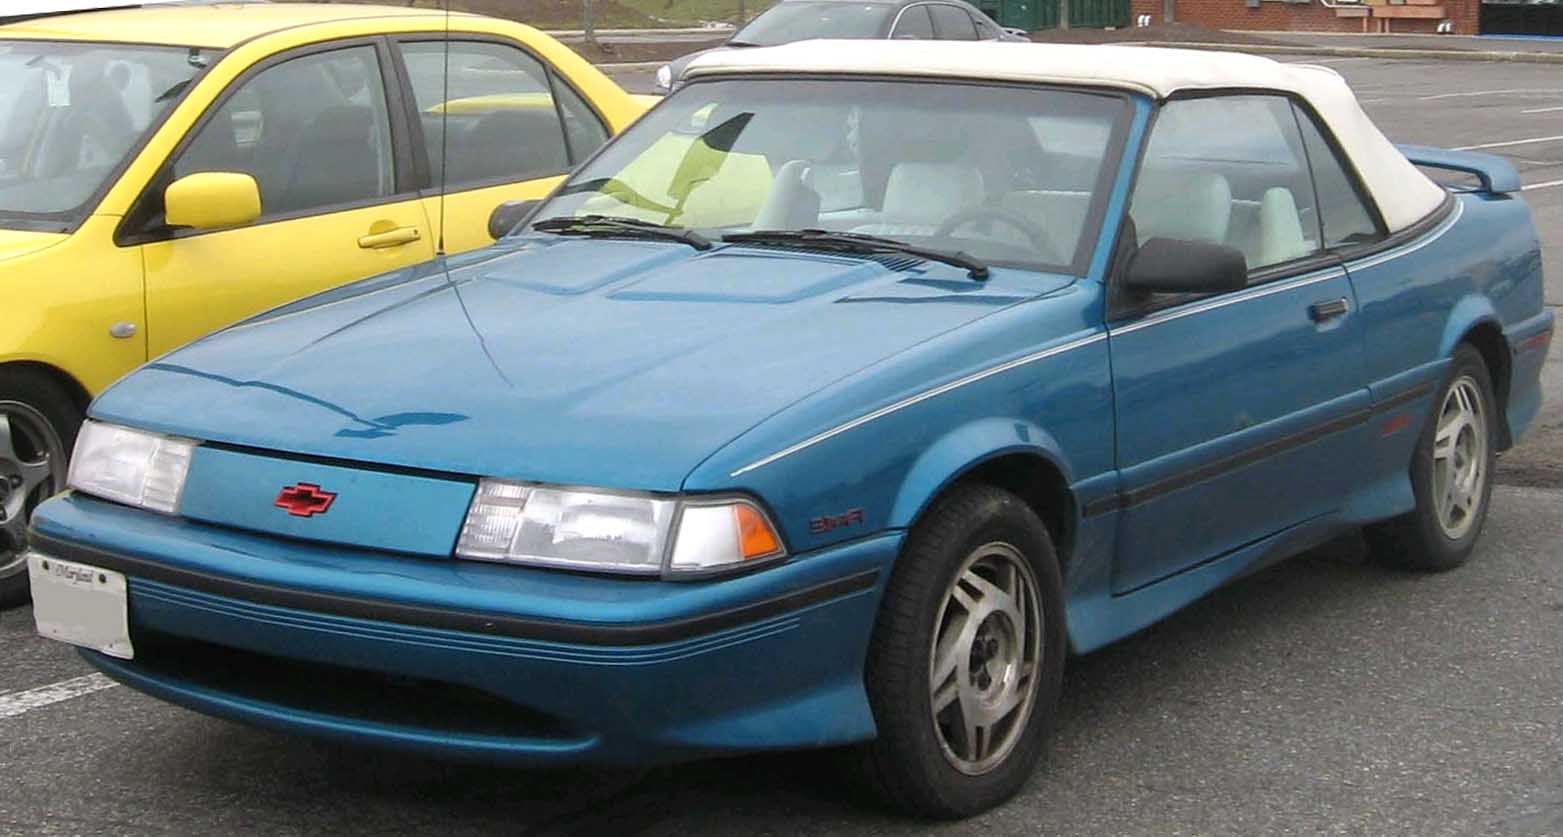  1991-1994 Cavalier Z24 convertible 